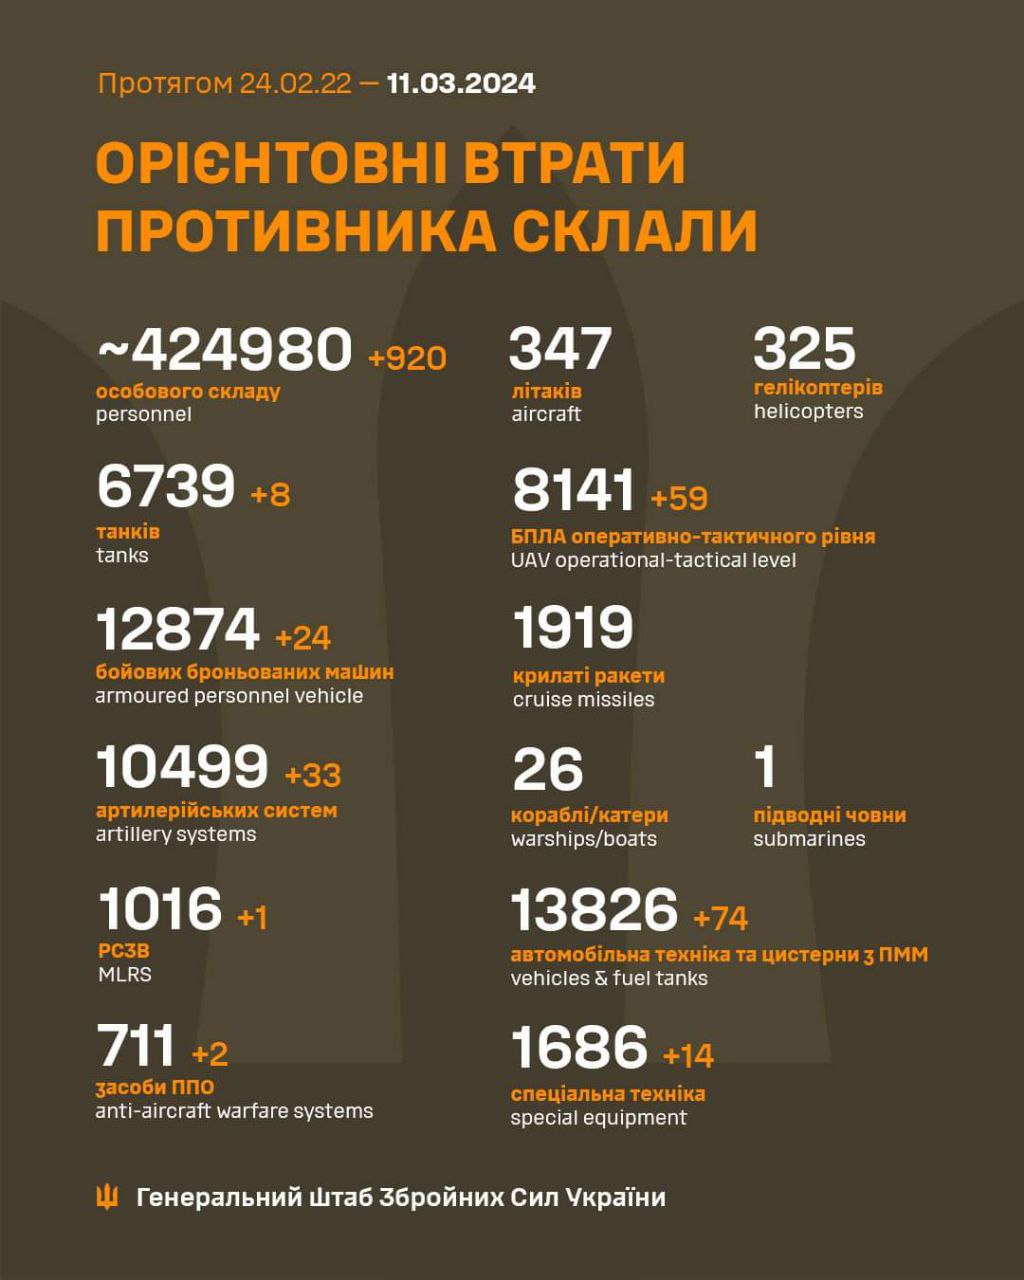 Еще более 900 оккупантов и 33 артсистемы: Генштаб обновил потери росармии в Украине